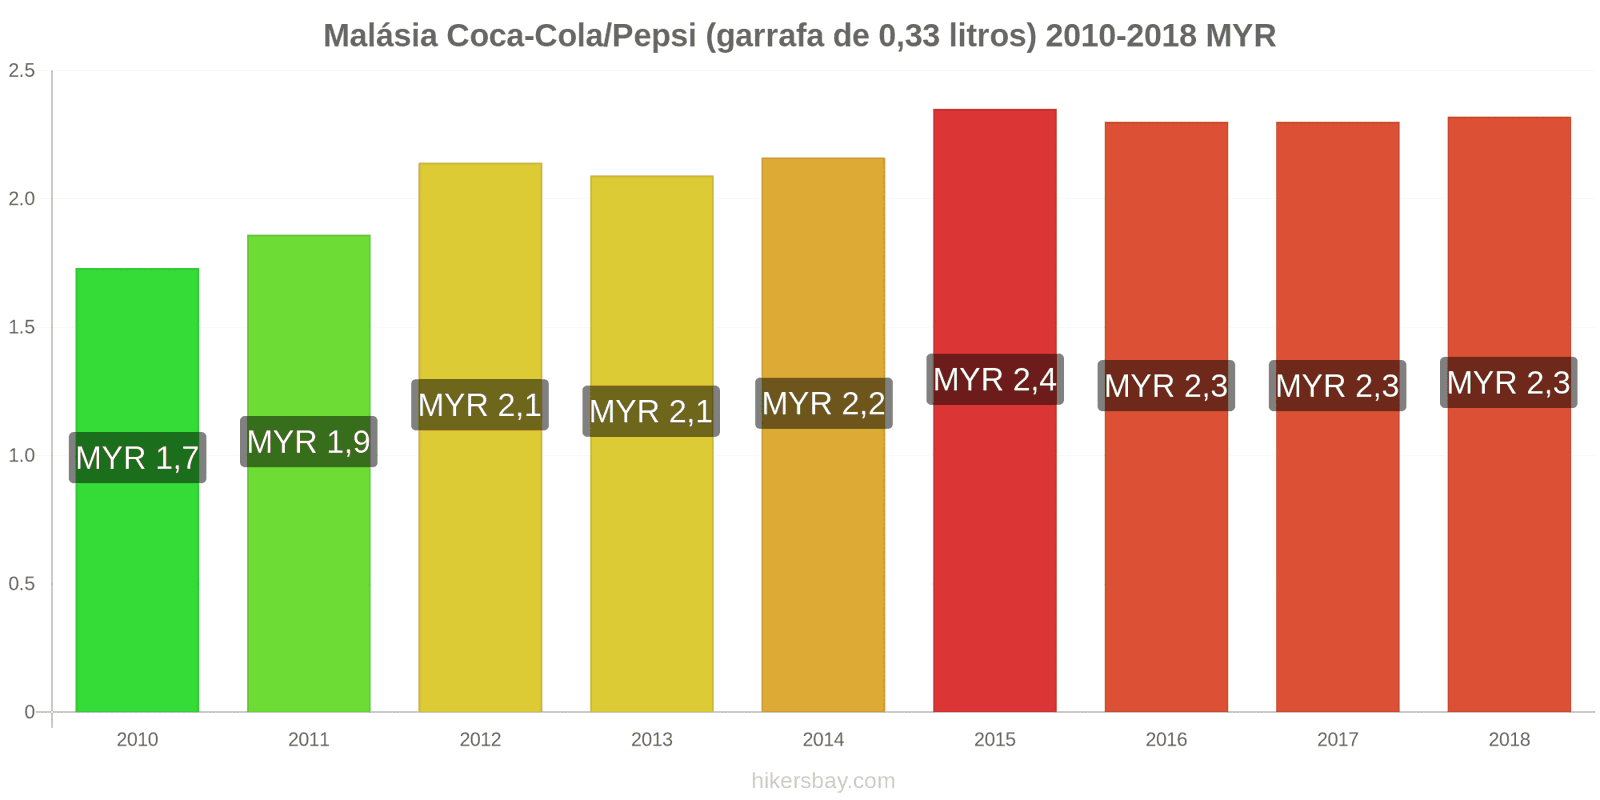 Malásia mudanças de preços Coca-Cola/Pepsi (garrafa de 0.33 litros) hikersbay.com